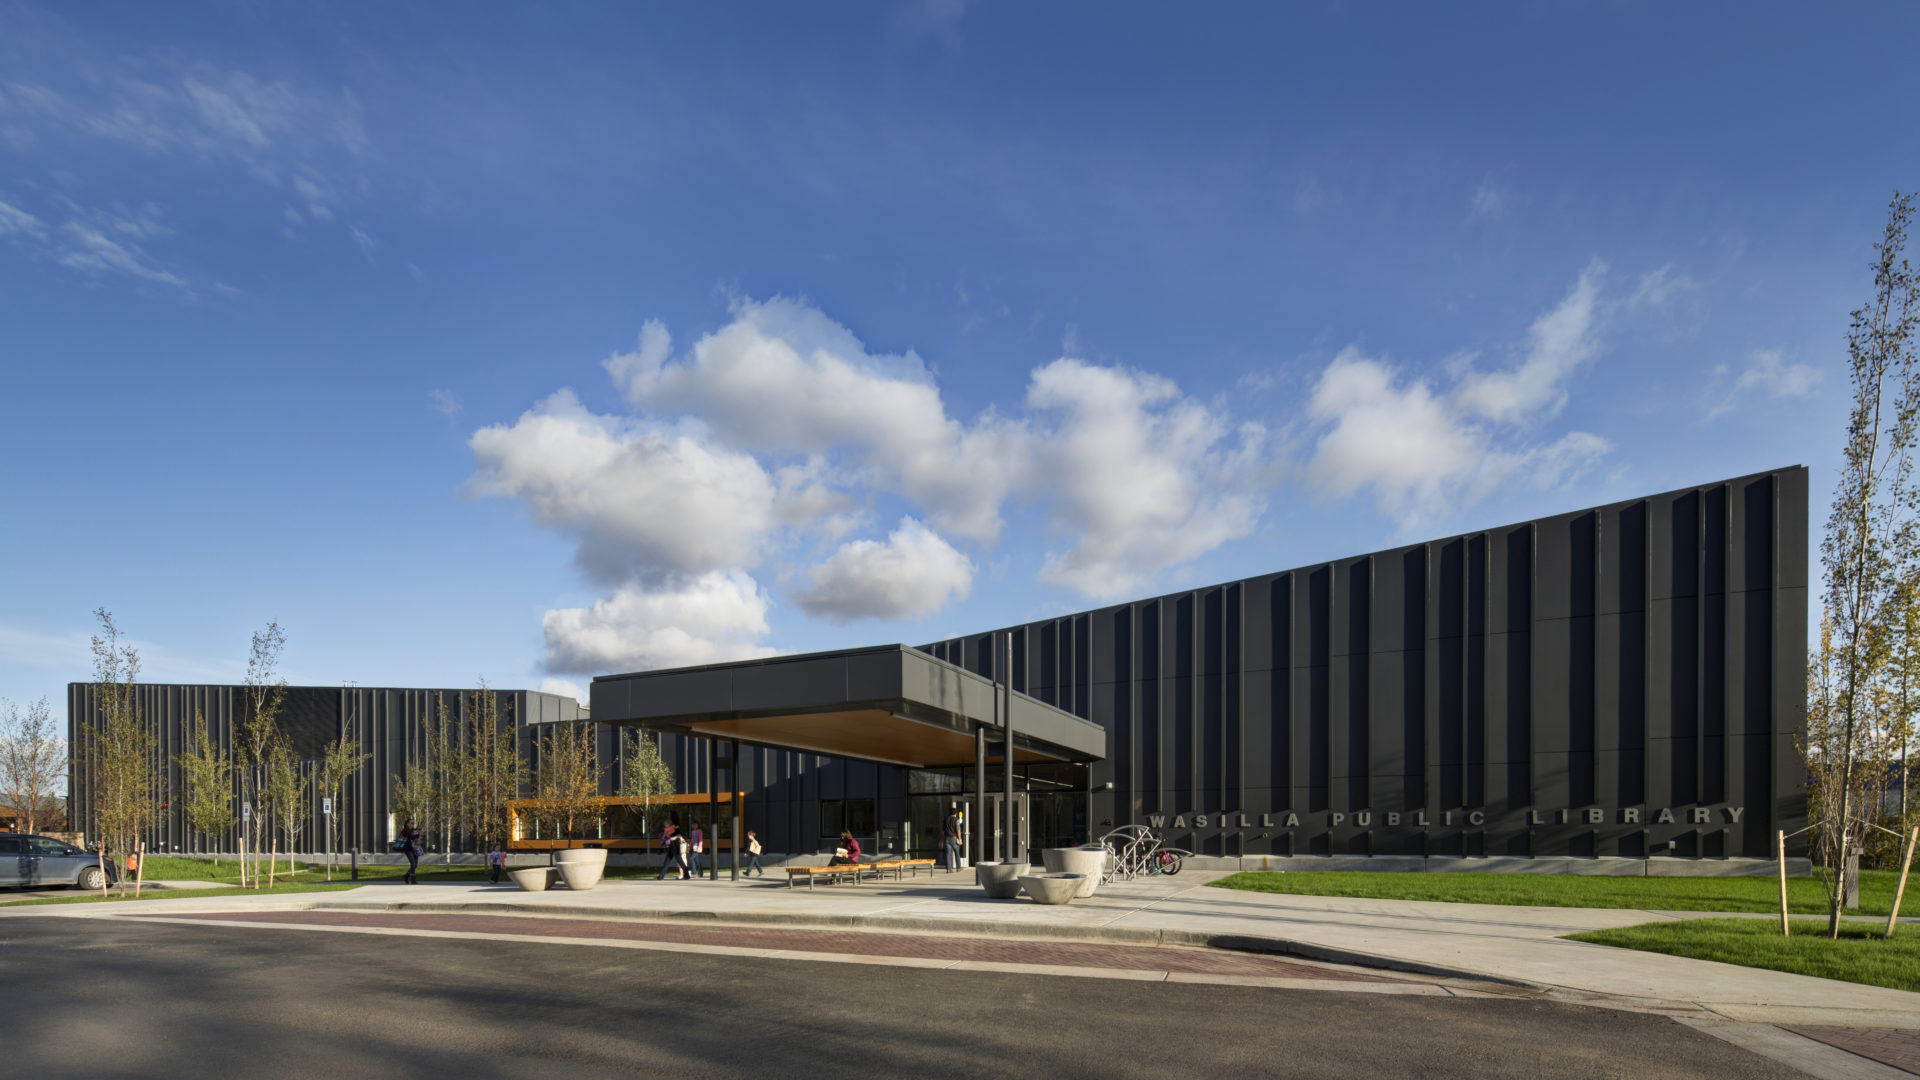 Wasilla Public Library | Cornerstone General Contractors